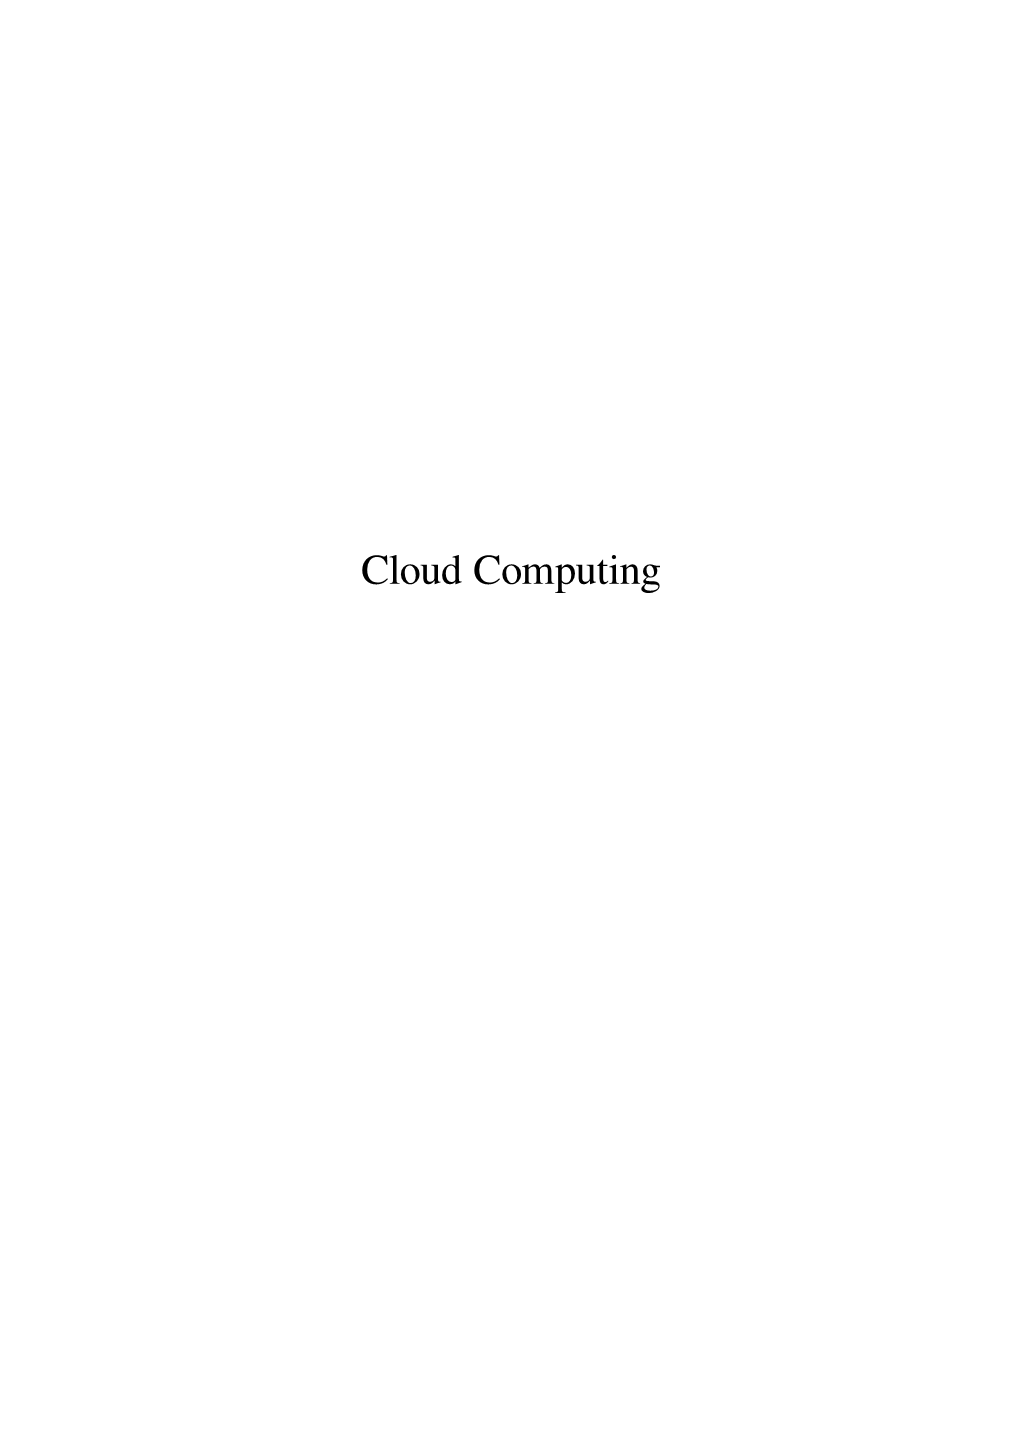 Cloud Computing Contents